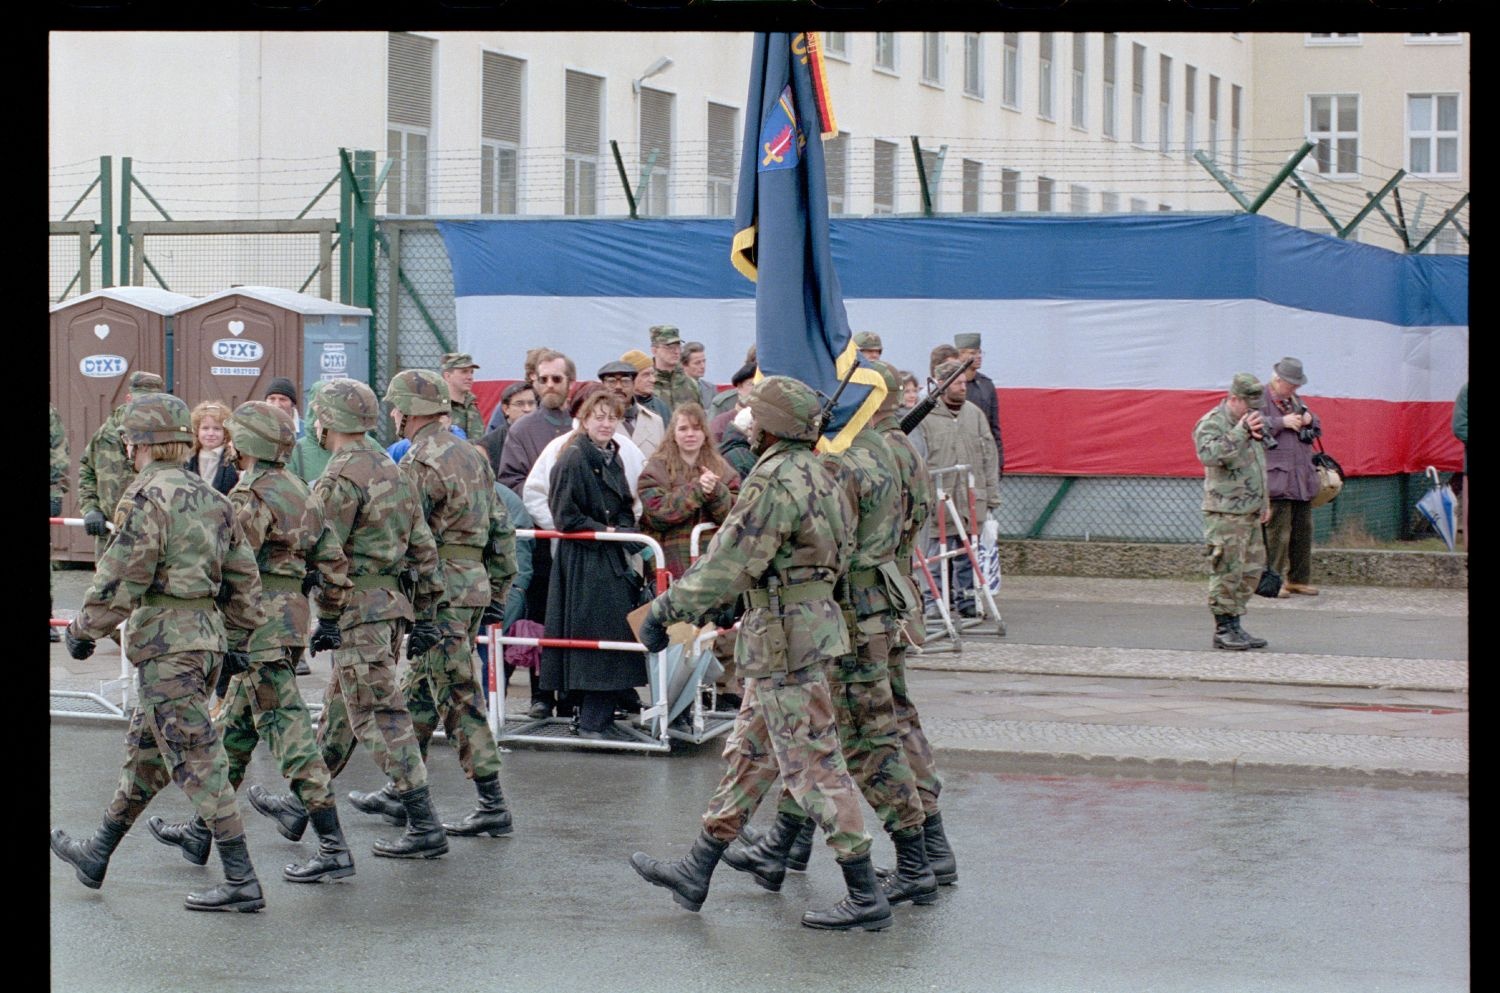 Fotografie: Verleihung des Fahnenbandes der Bundesrepublik Deutschland an Einheiten der U.S. Army Berlin in Berlin-Lichterfelde (AlliiertenMuseum/U.S. Army Photograph Public Domain Mark)